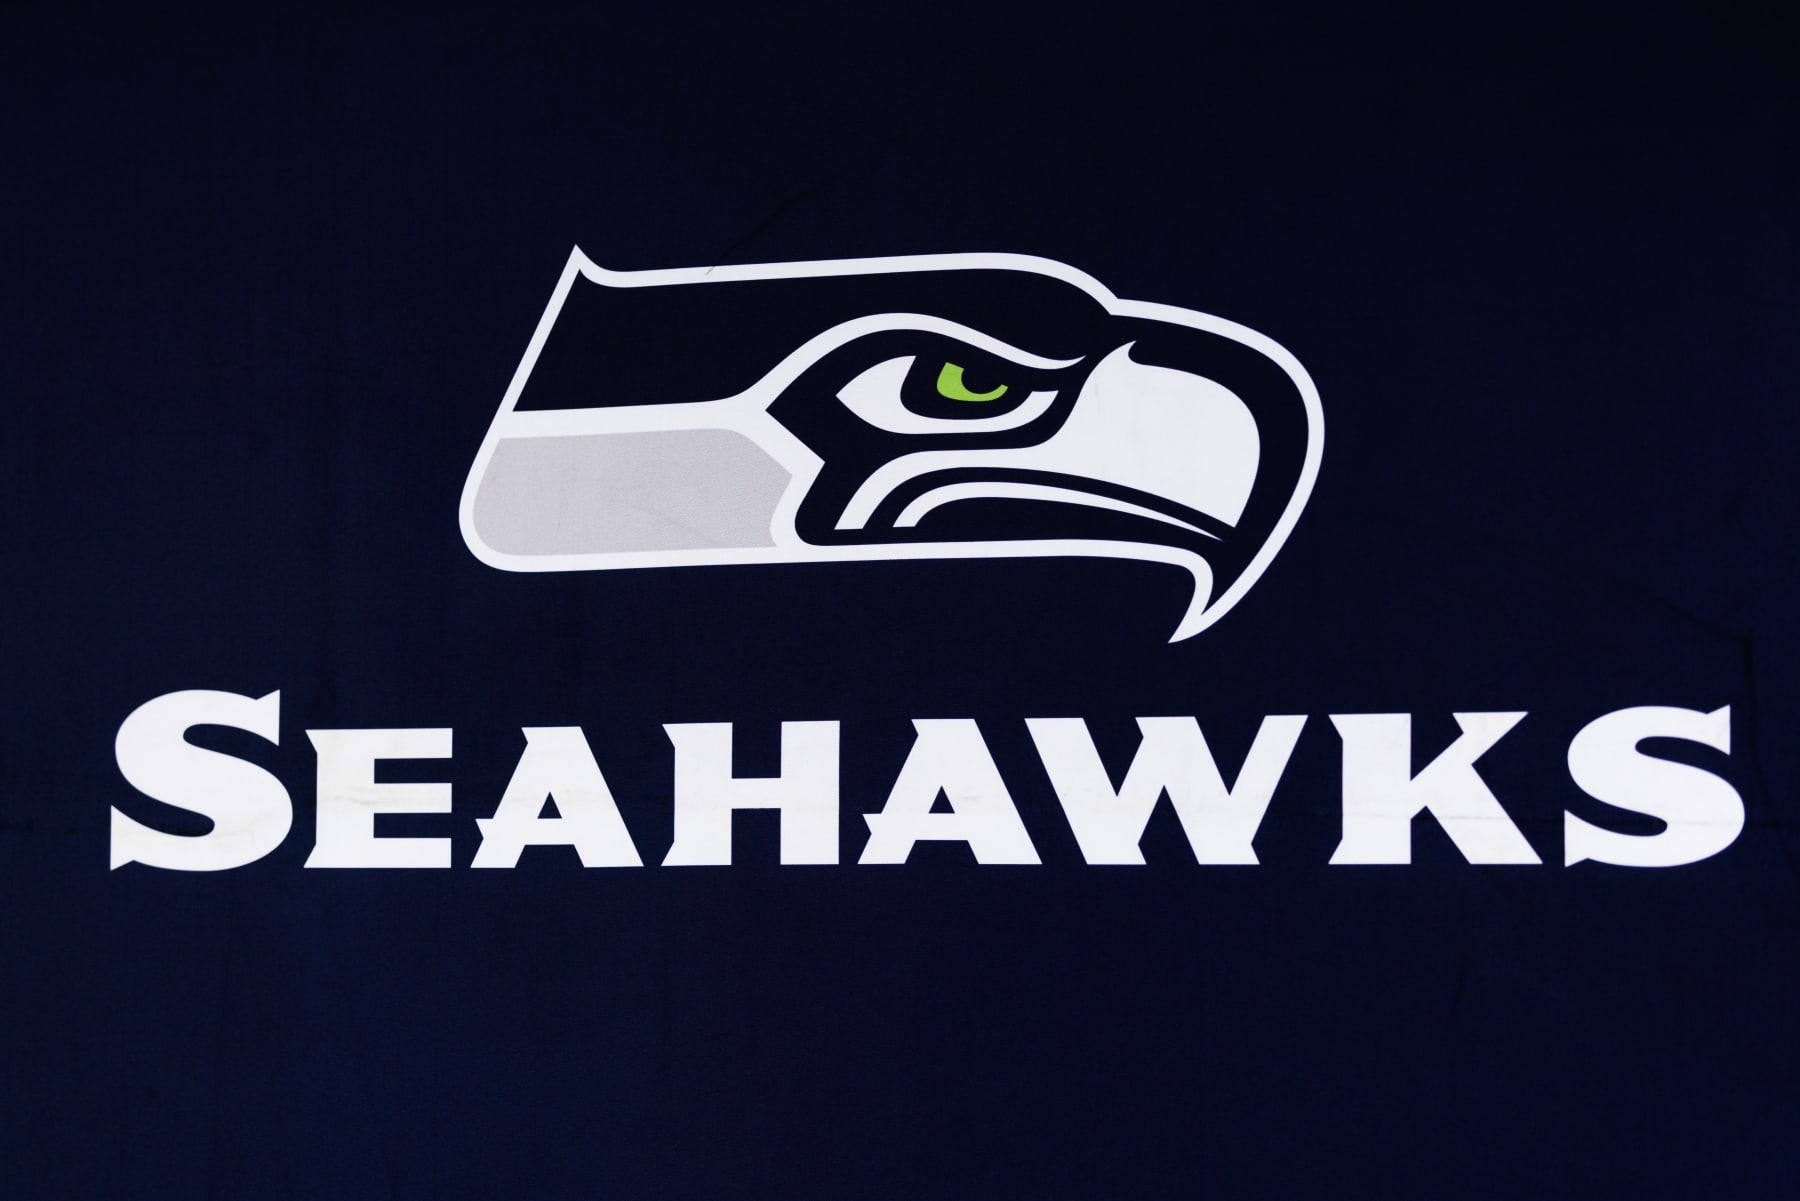 seahawks logo blue background